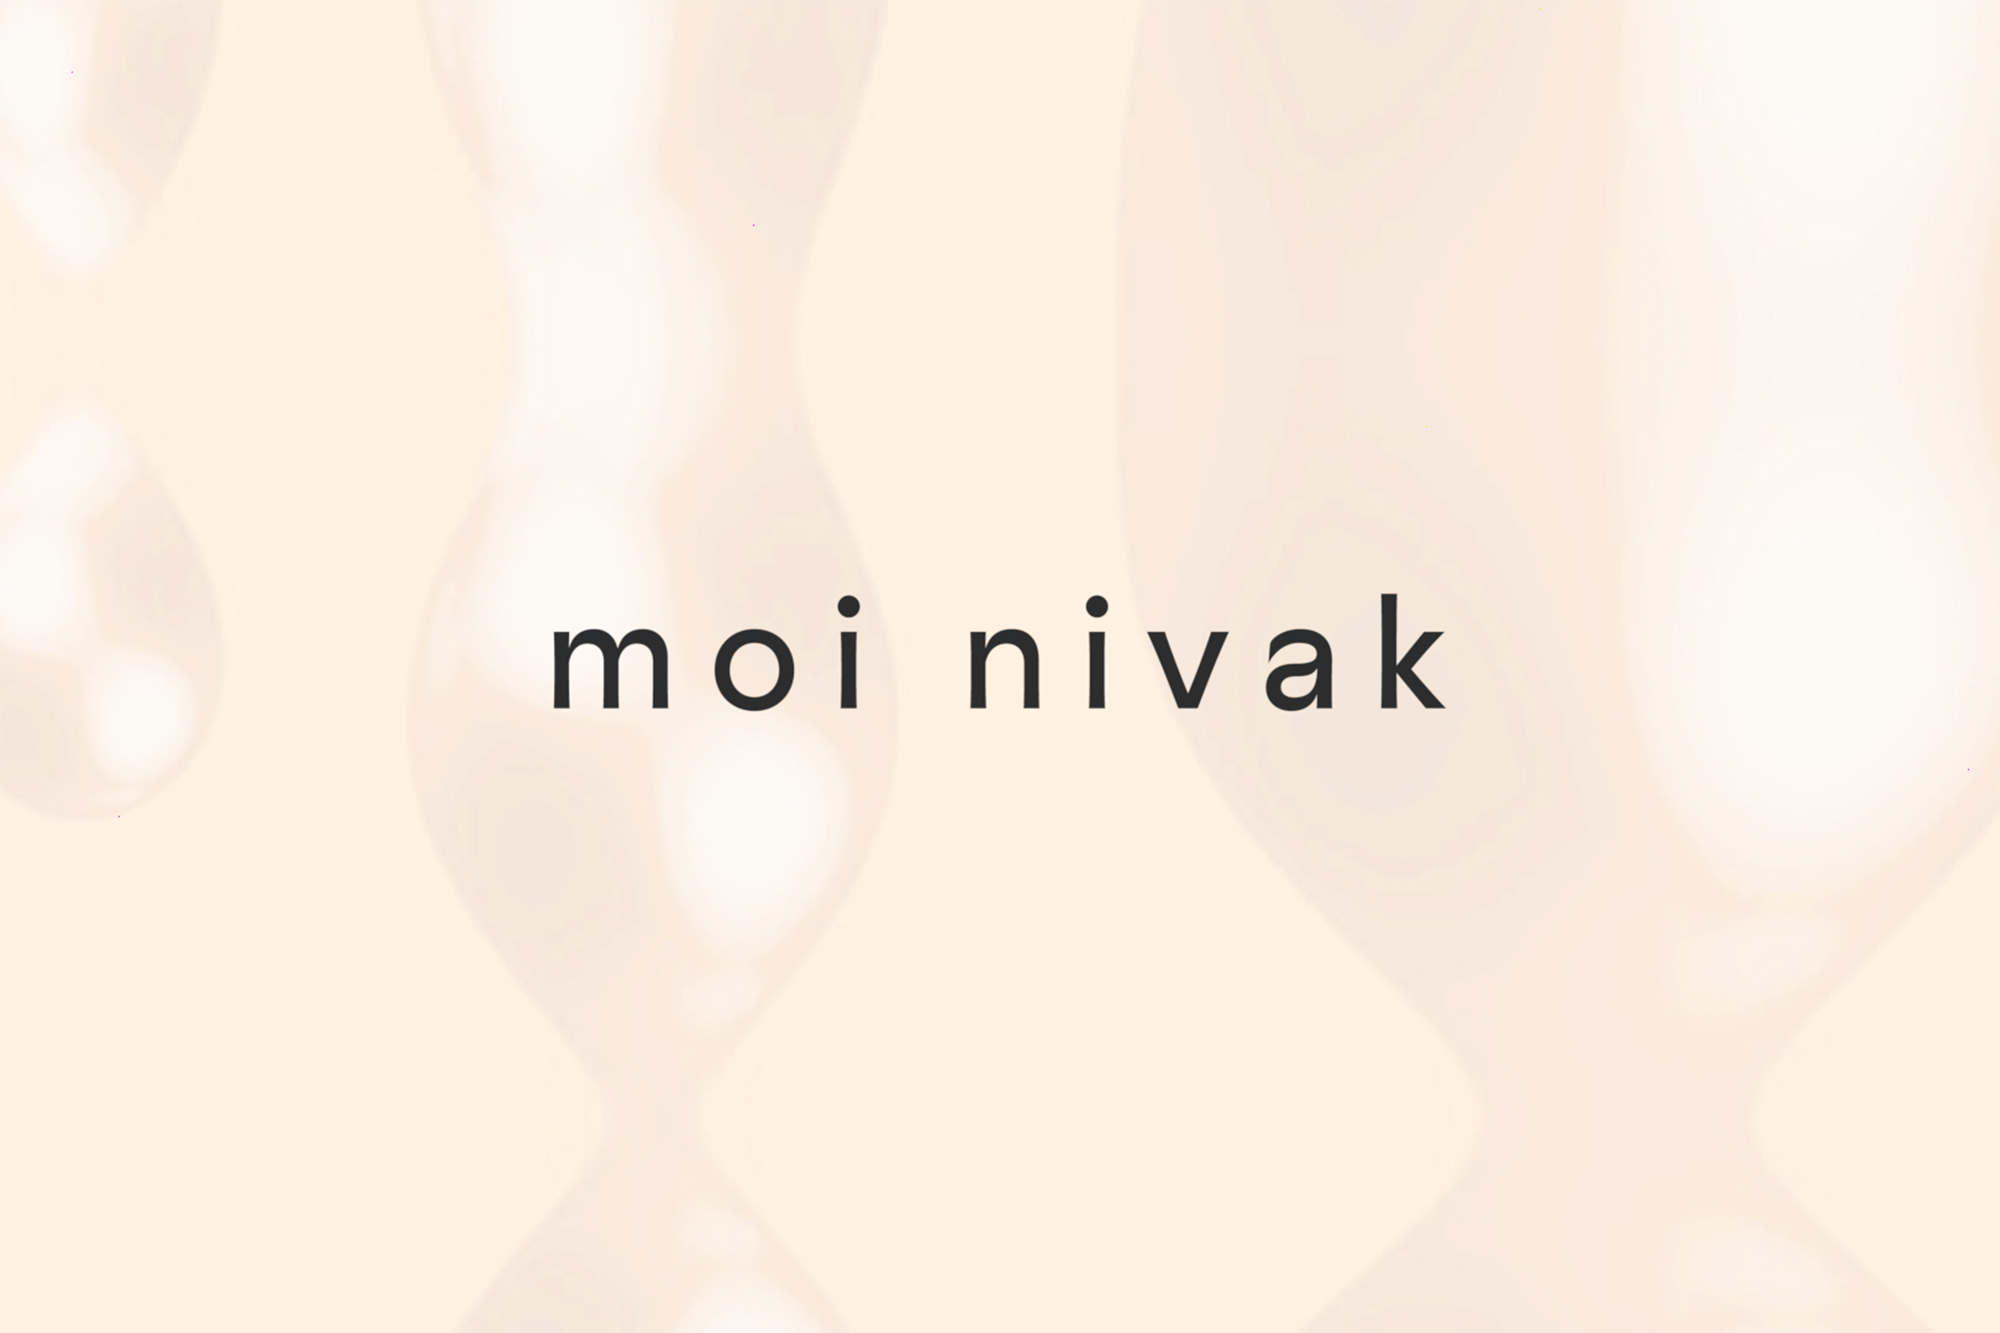 Moi Nivak Online Retailer Branding Designed by Graphic Dpt